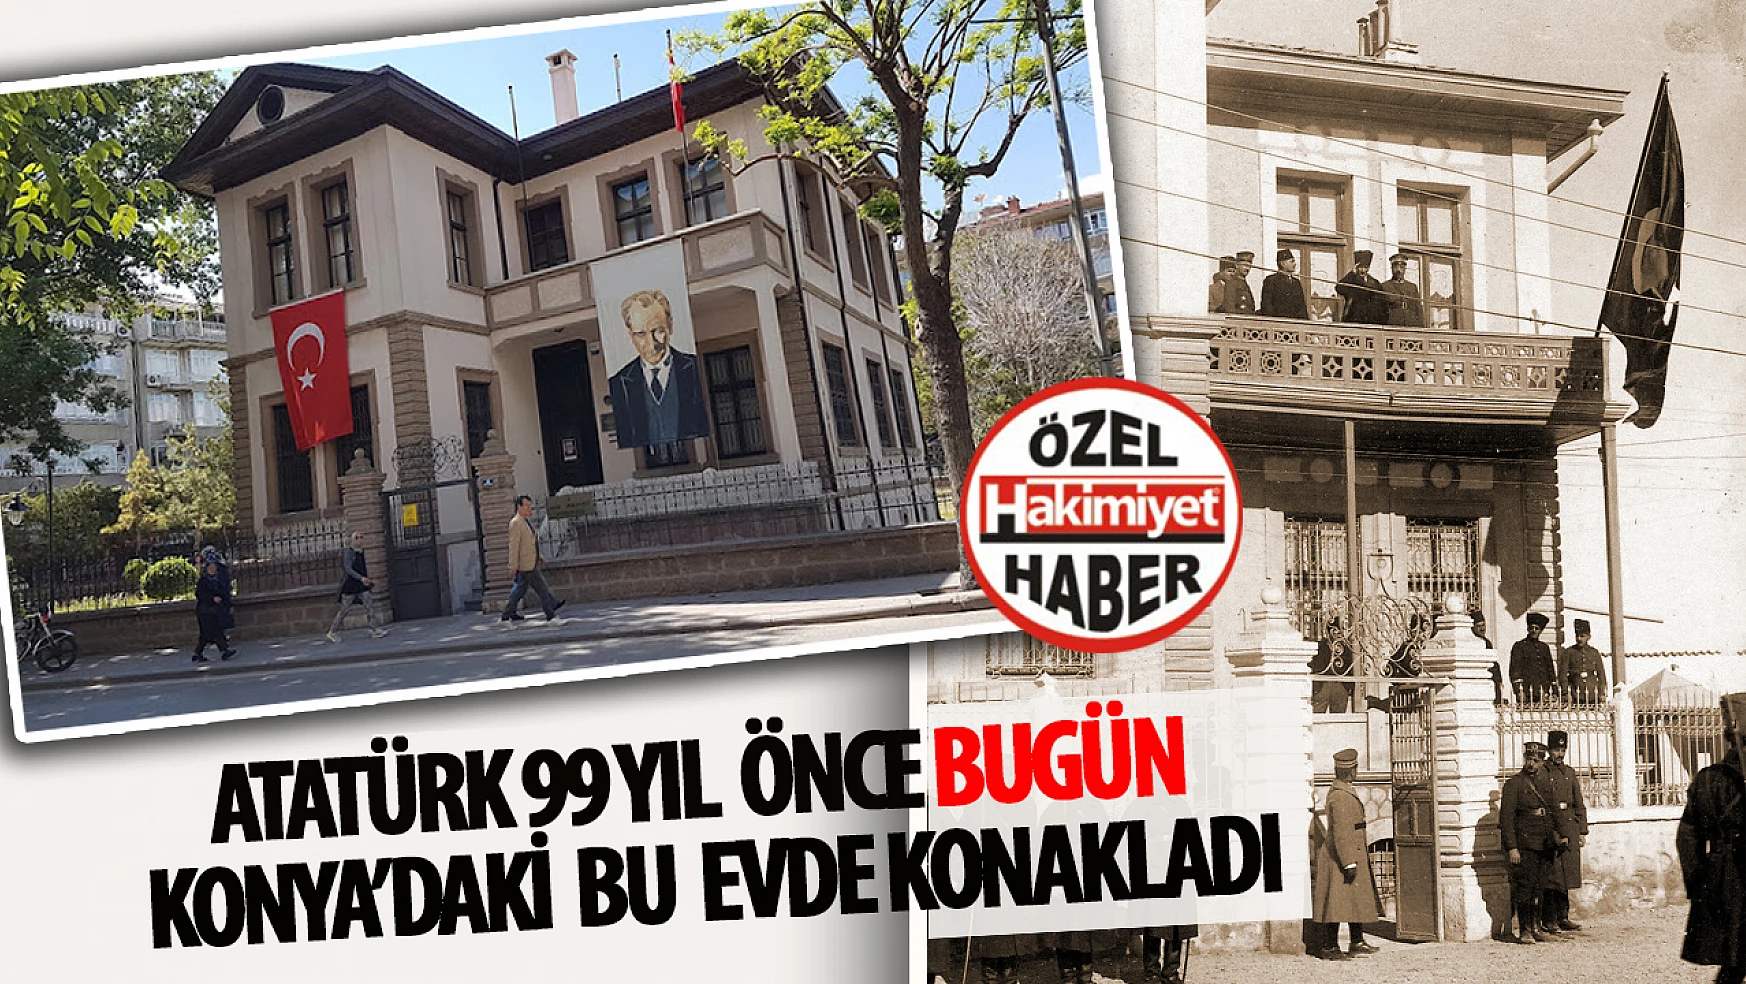 Atatürk'ün Konya'da 11 Gün Geçirdiği Ev: 4 Ocak 1925 Tarihli Fotoğrafın Hikayesi